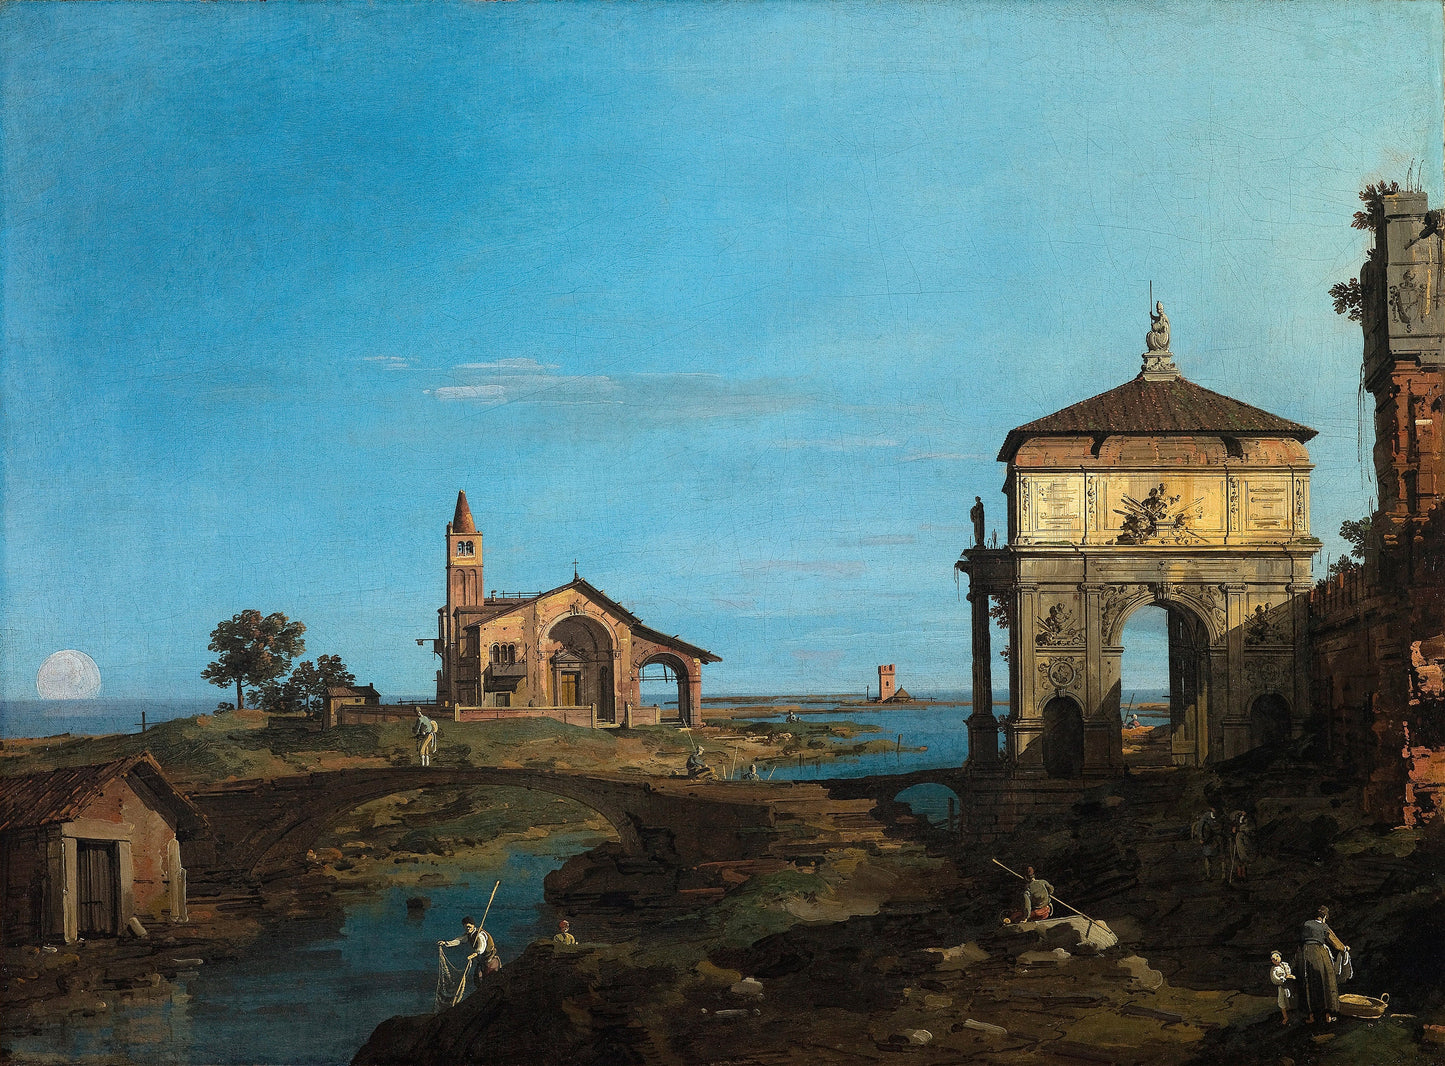 Canaletto Venetian Landscape Paintings Set 2 [28 Images]